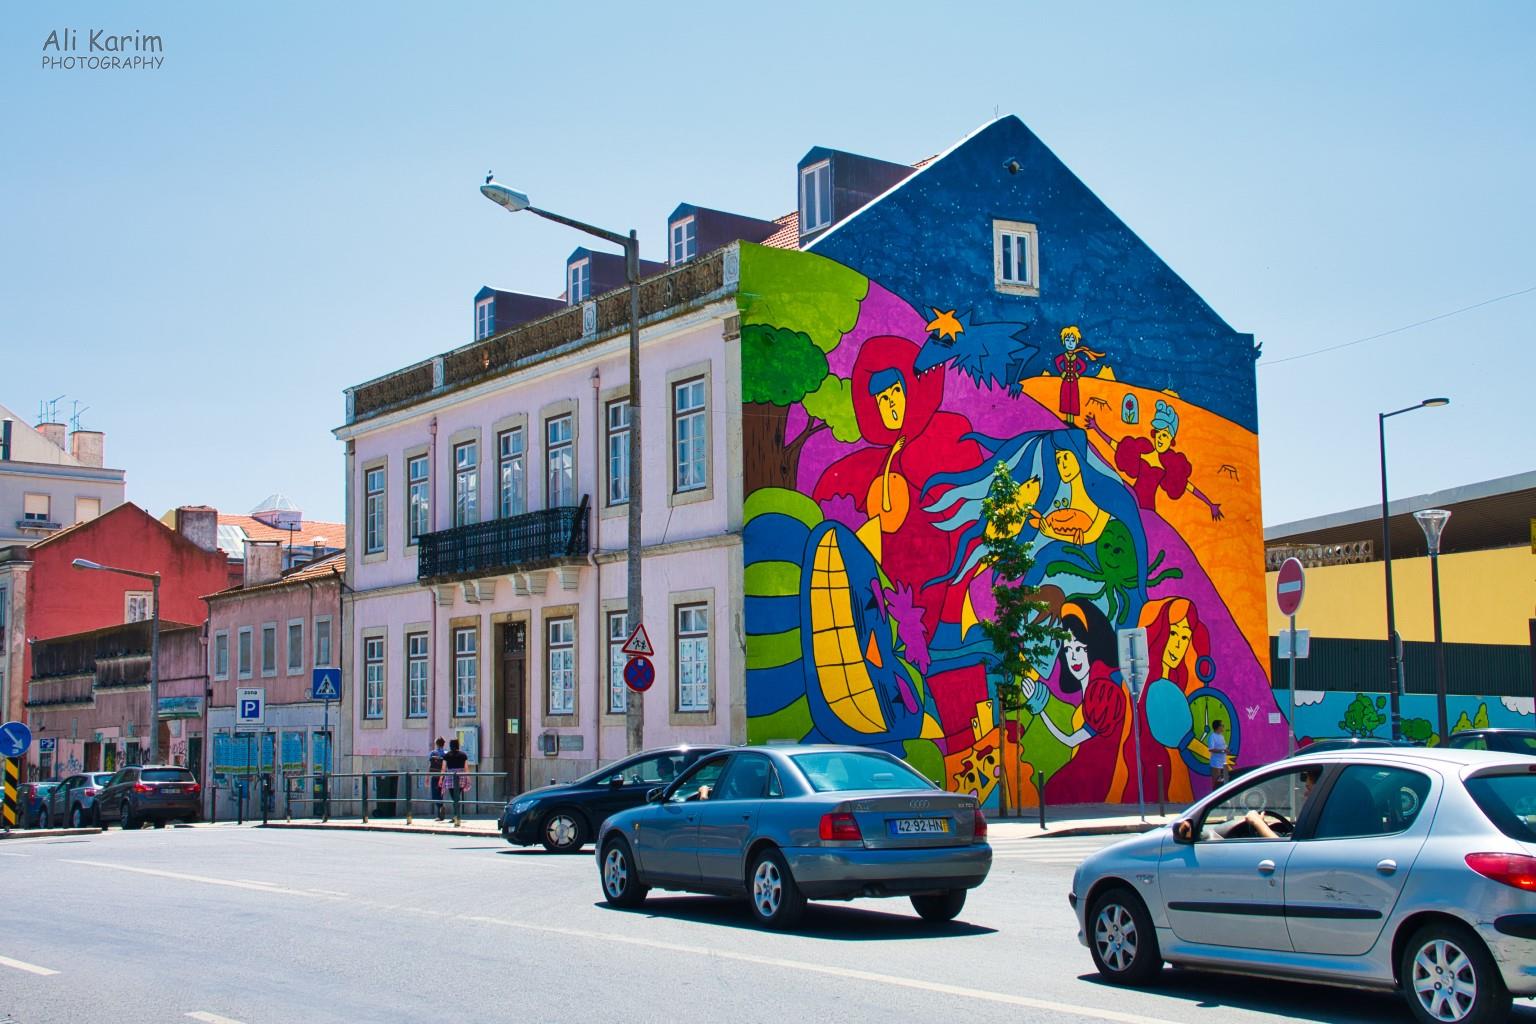 Lisbon Portugal: Interesting mural artwork everywhere in Lisbon